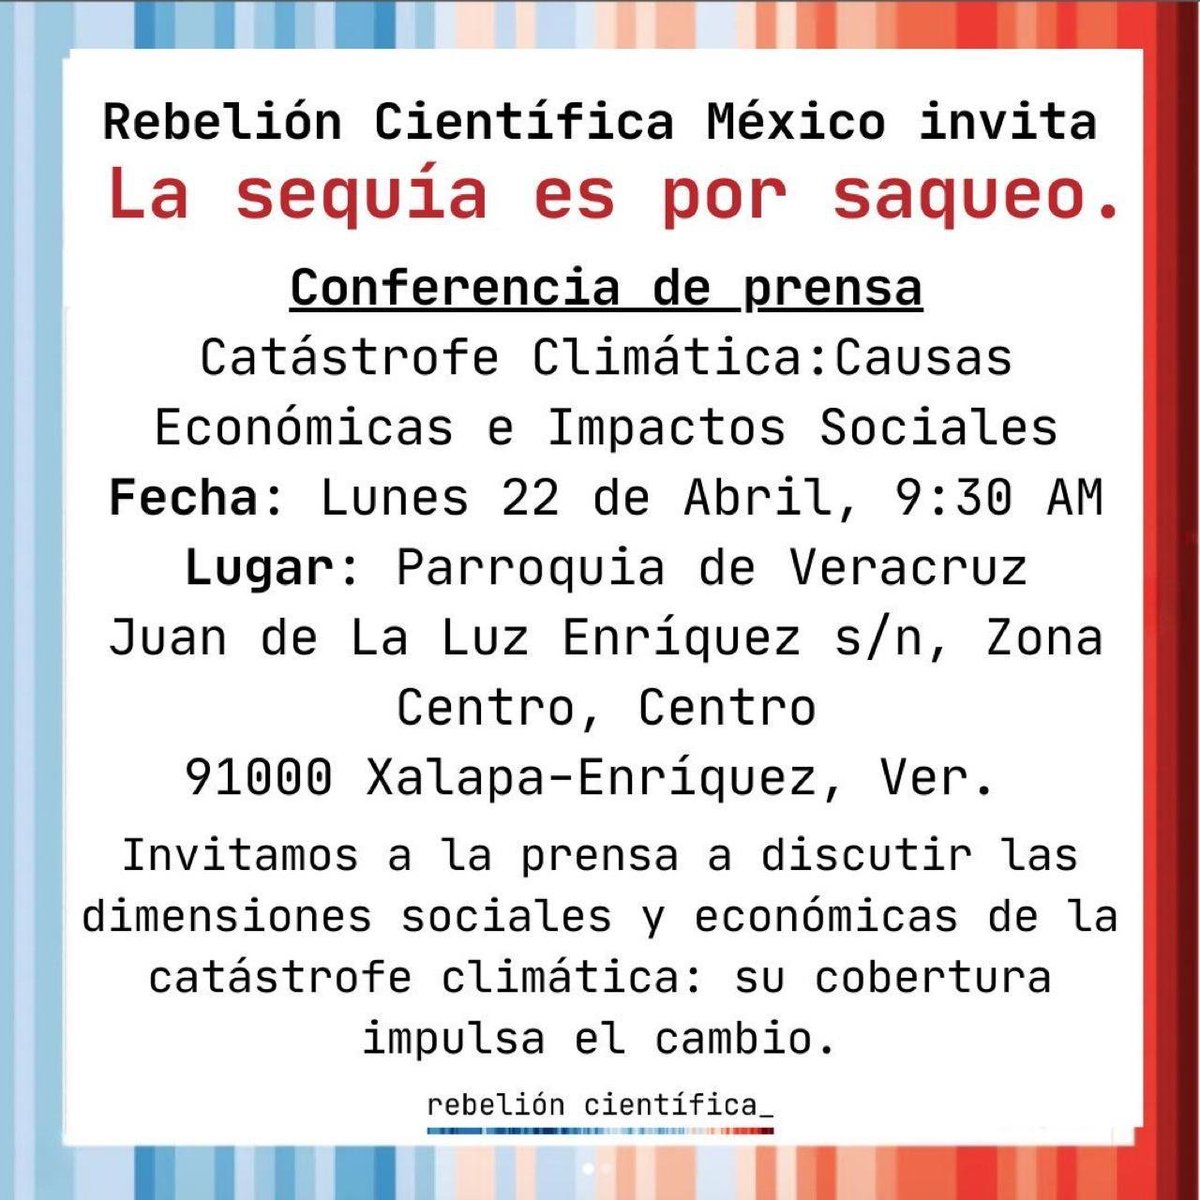 Acompáñennos mañana a hablar de #crisisclimática, desigualdades económicas, #estréshídrico y #capitalismo por el #DiadeLaTierra